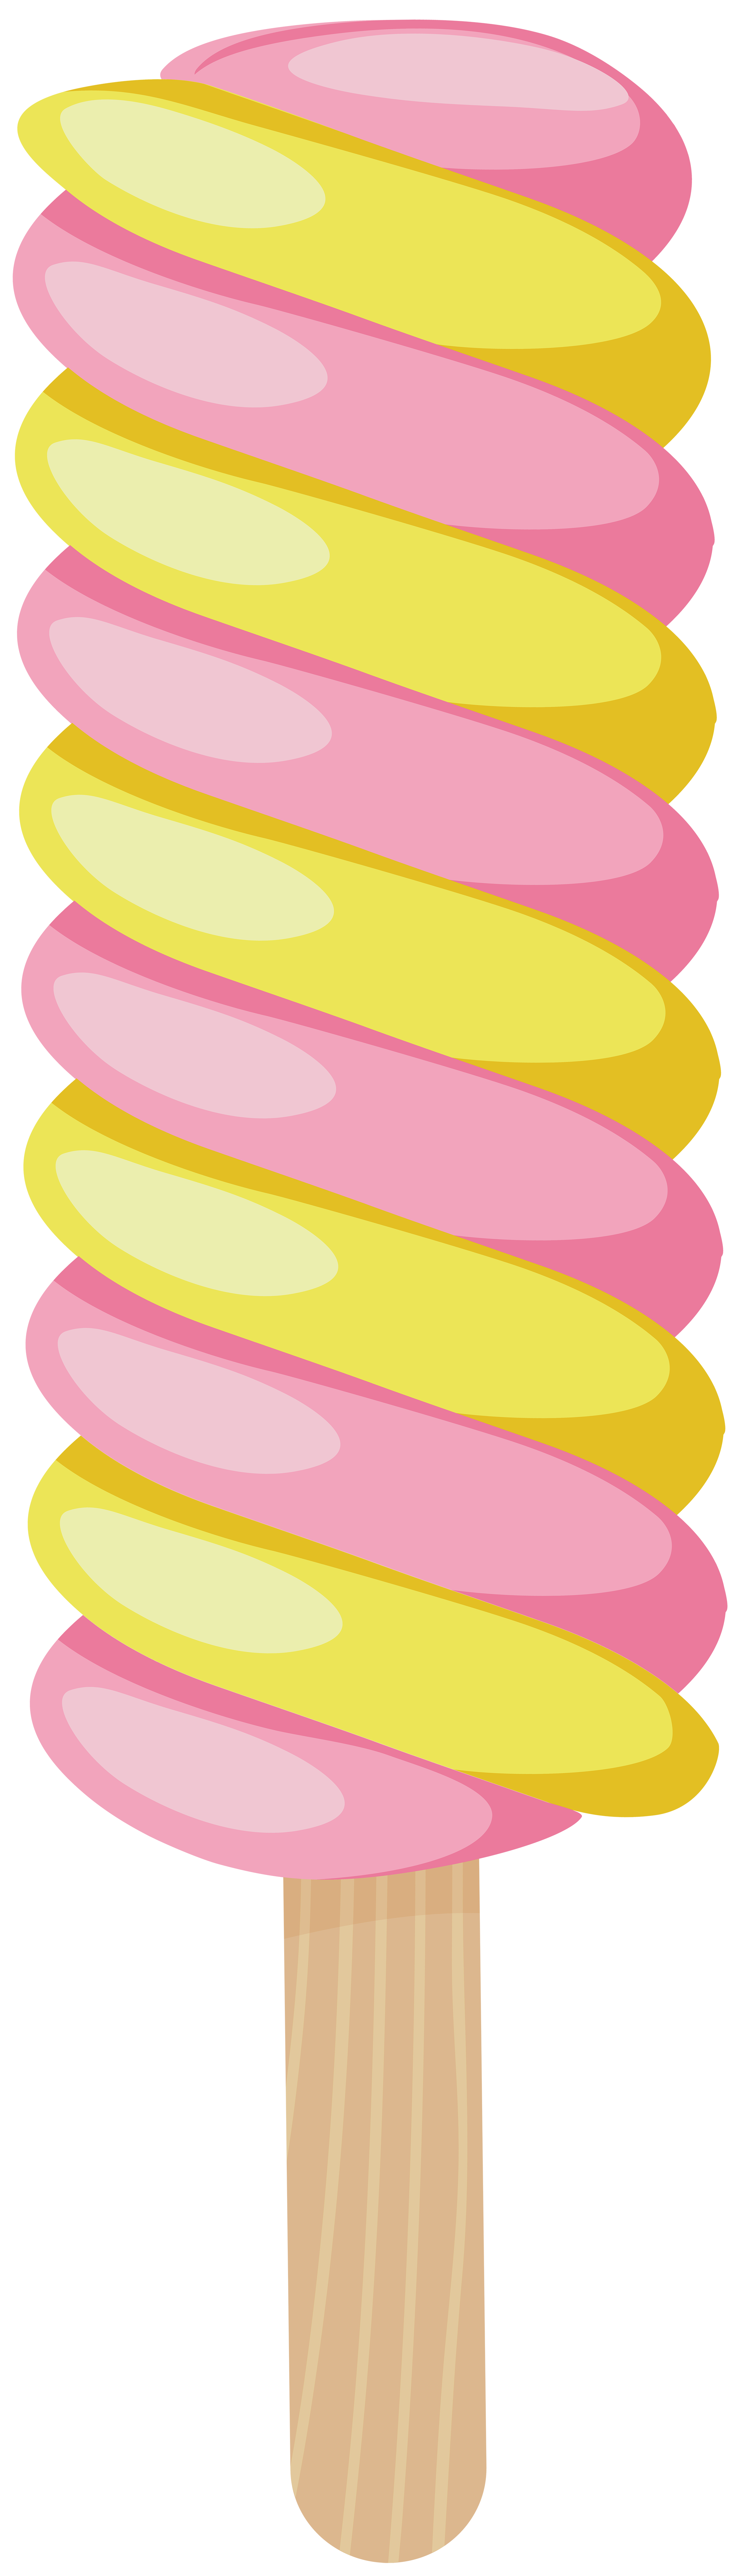 yellow swirl clip art